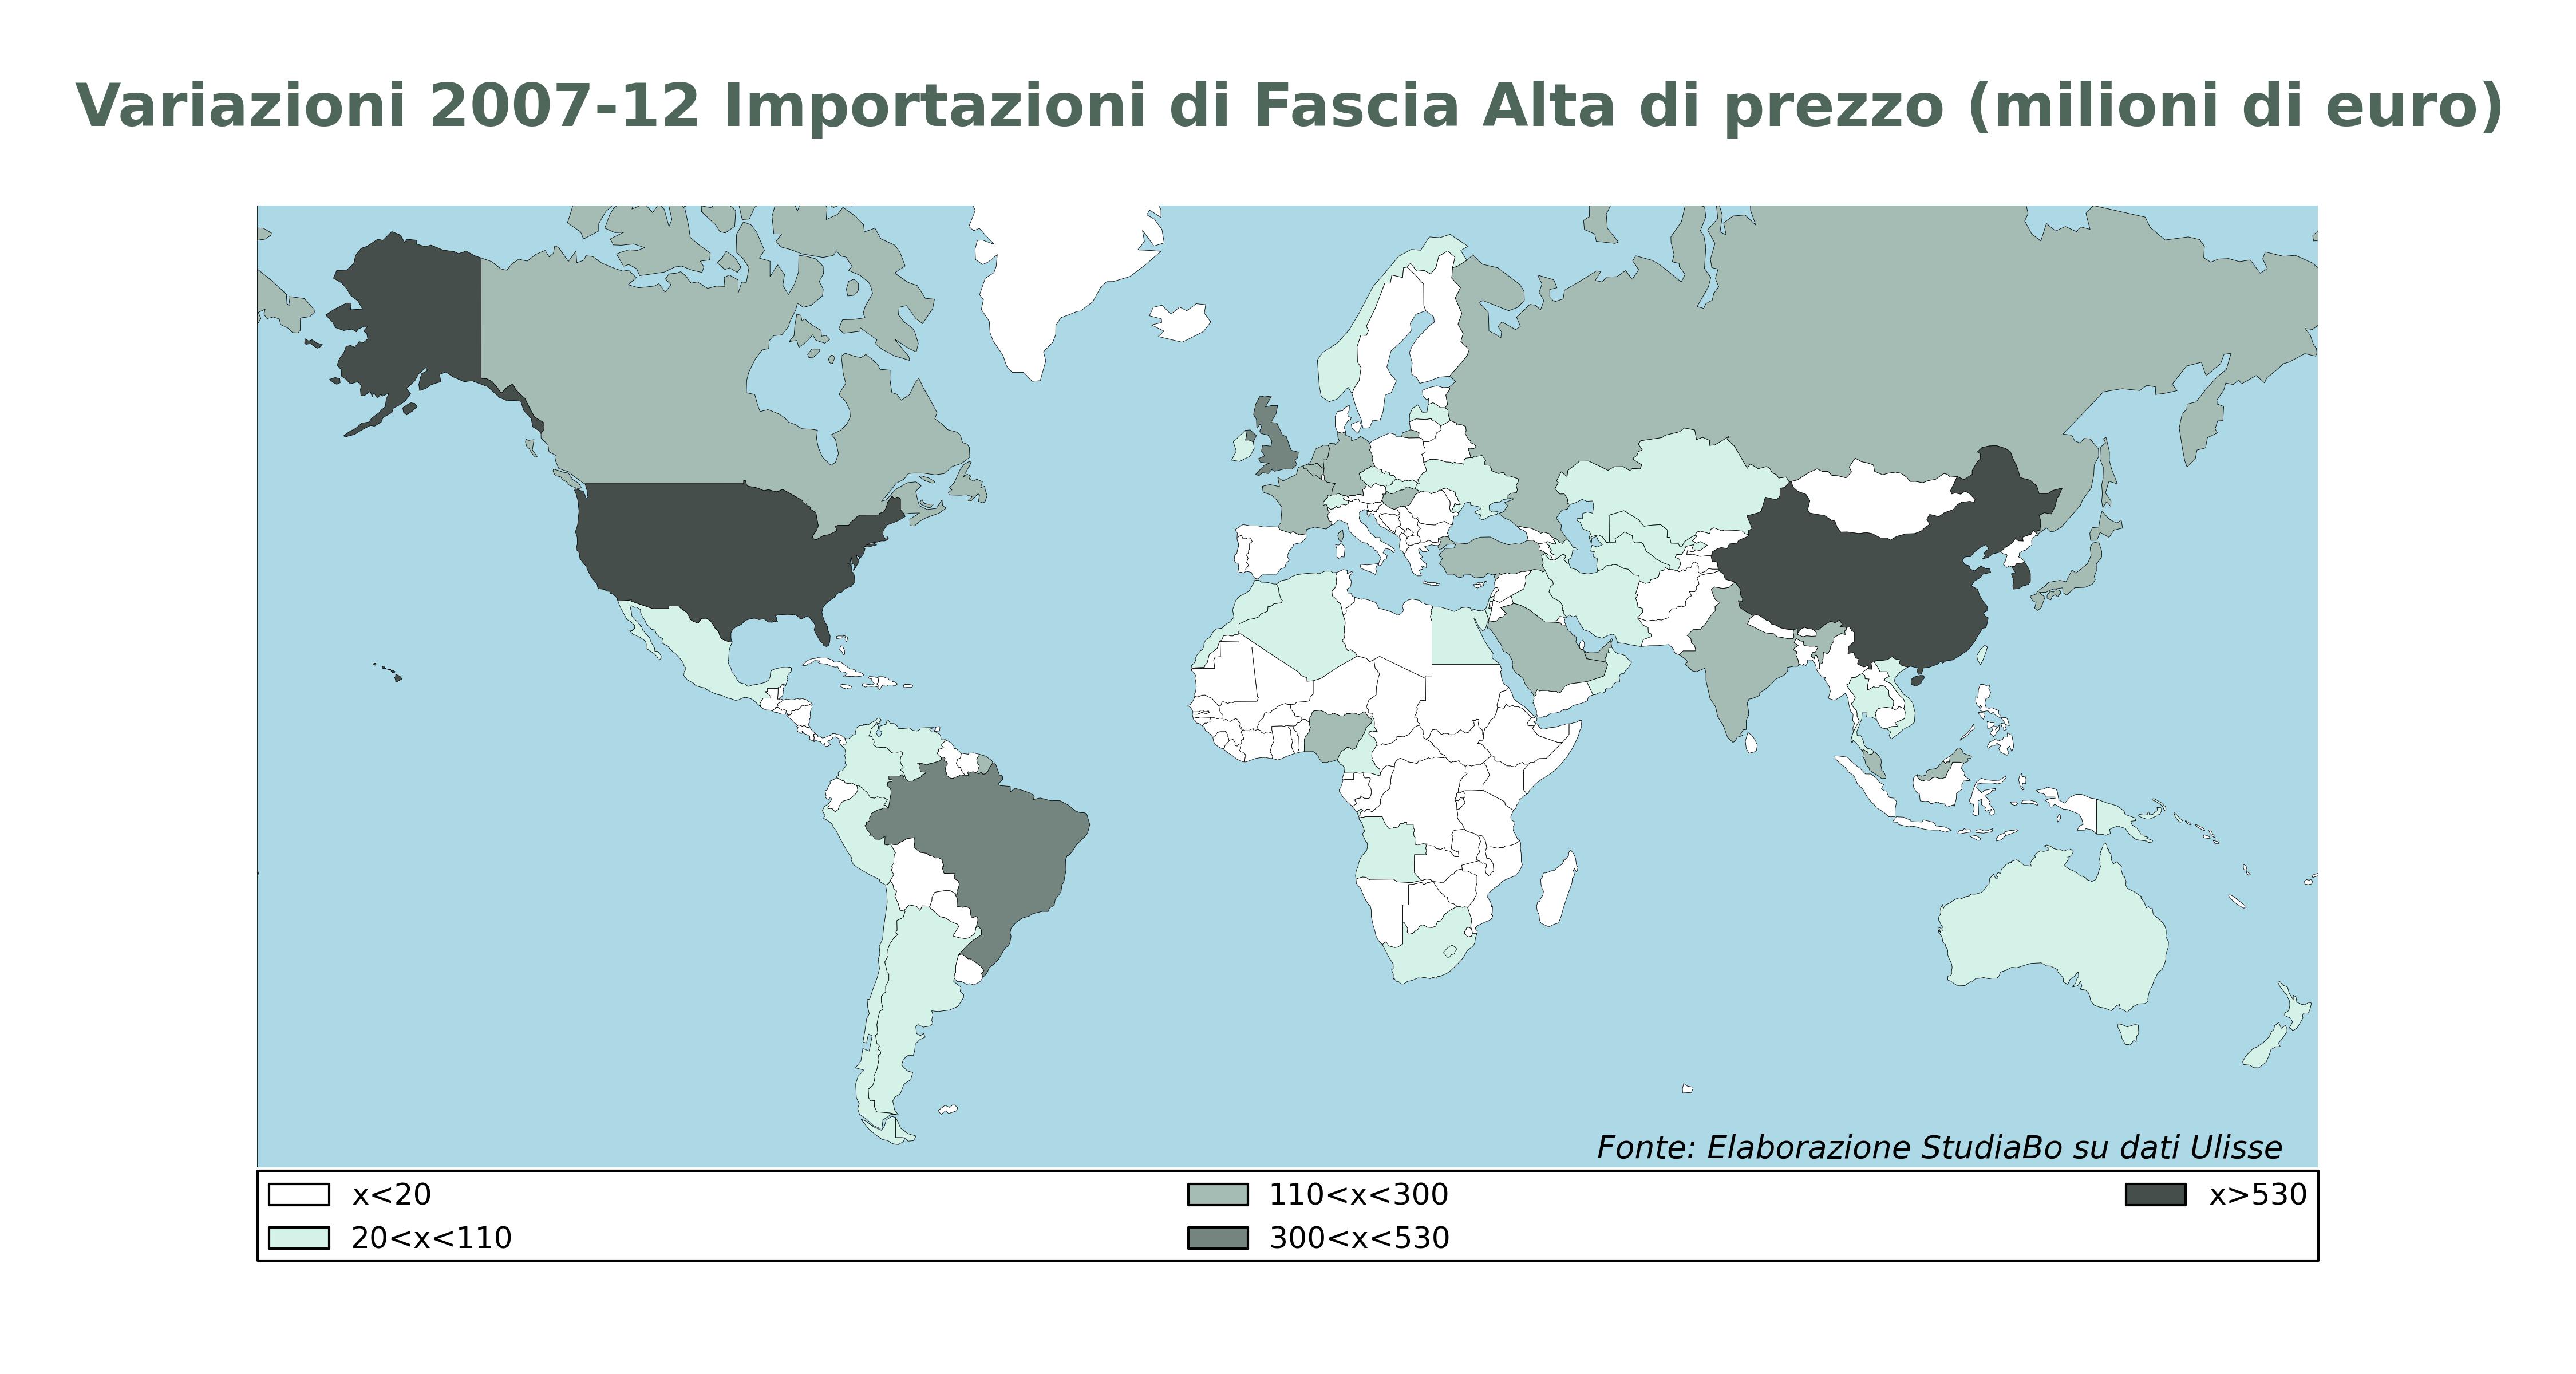 Variazioni 2007-2012 Importazioni di Fascia Alta di prezzo (fonte: Sistema Informativo Ulisse)